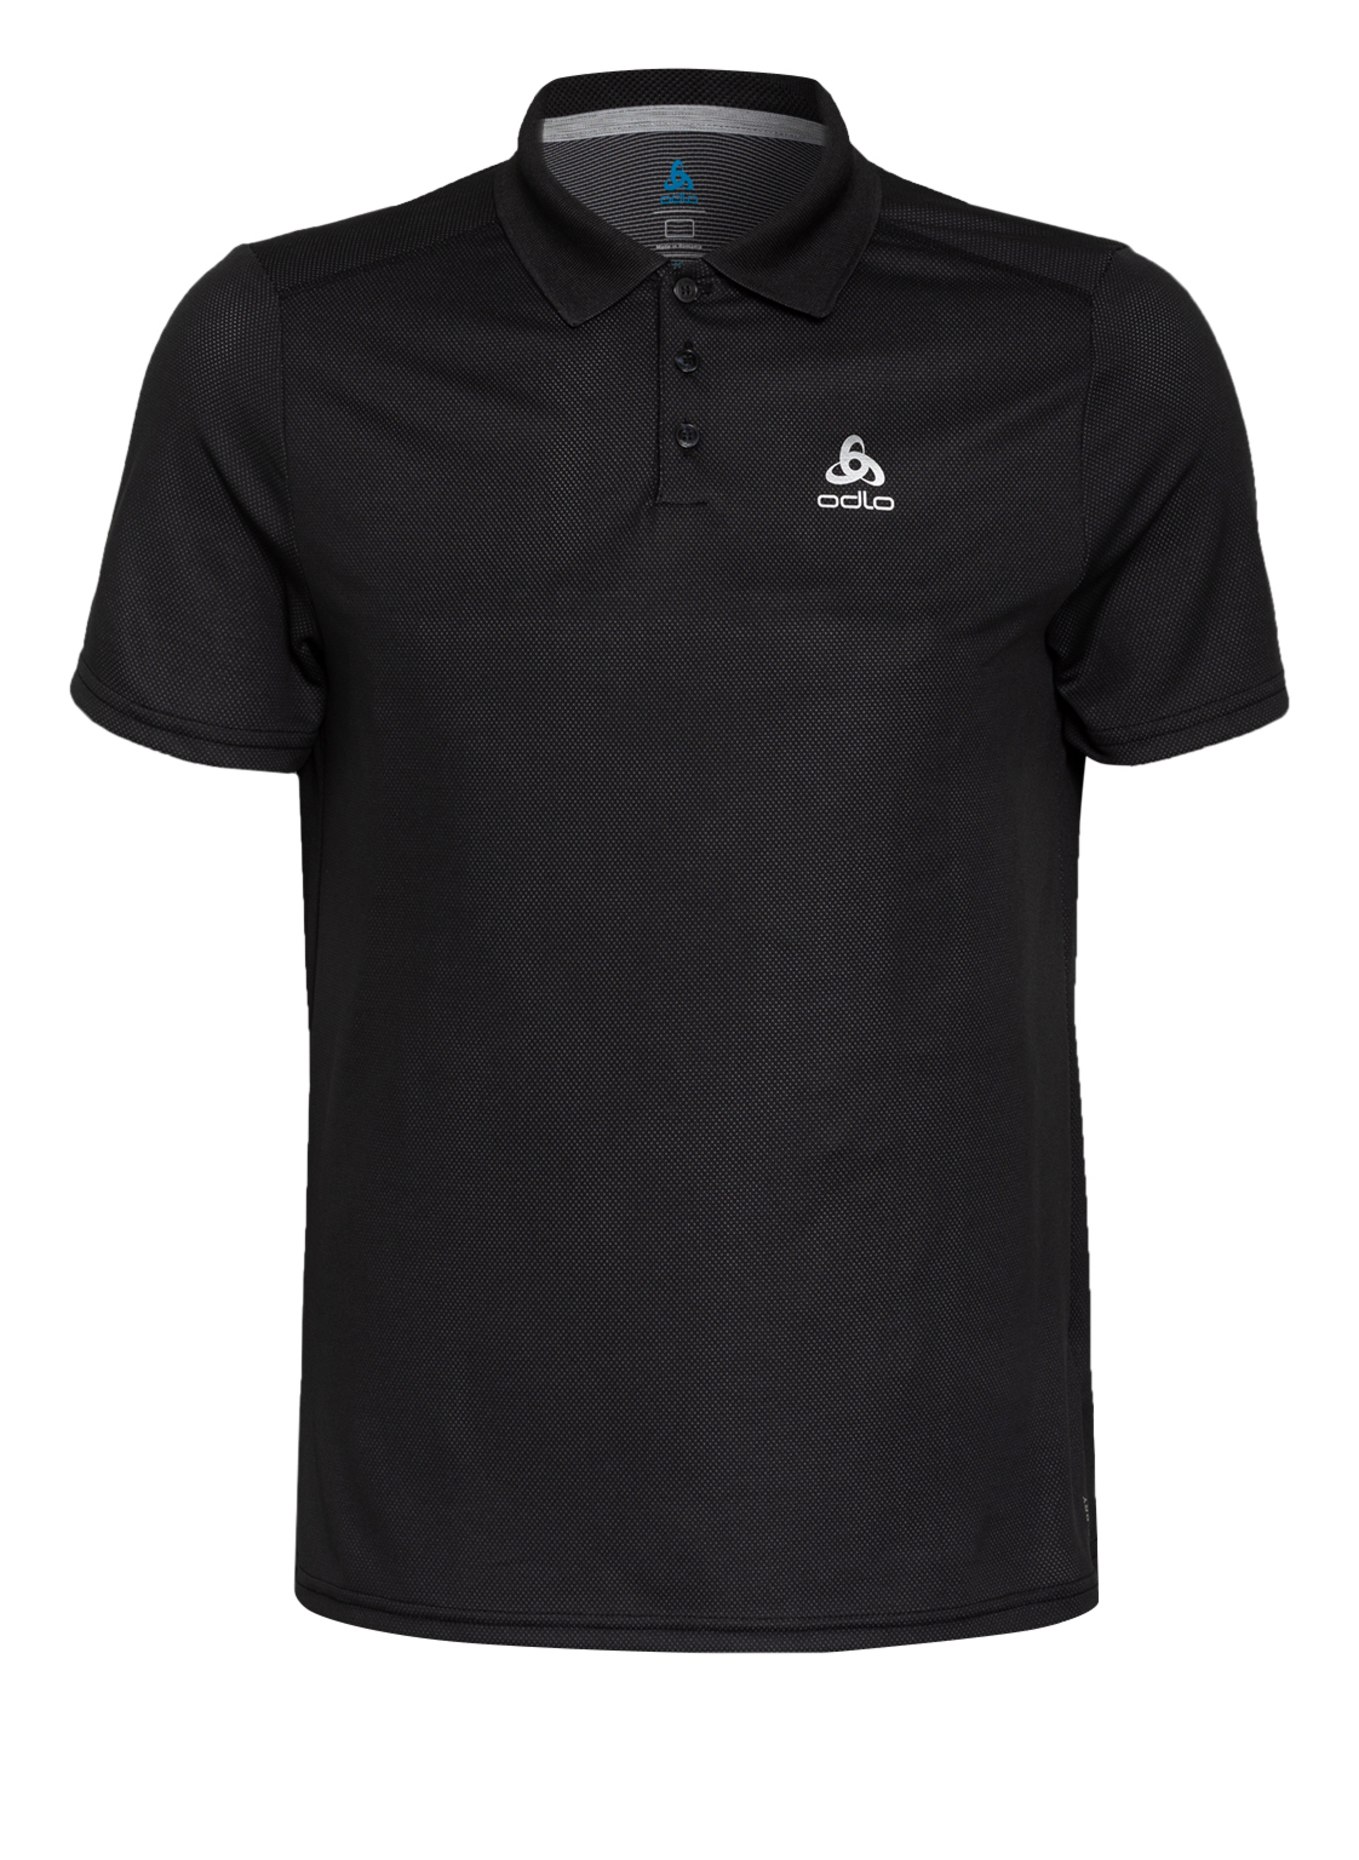 odlo Performance polo shirt F-DRY with UV protection 30+, Color: BLACK (Image 1)